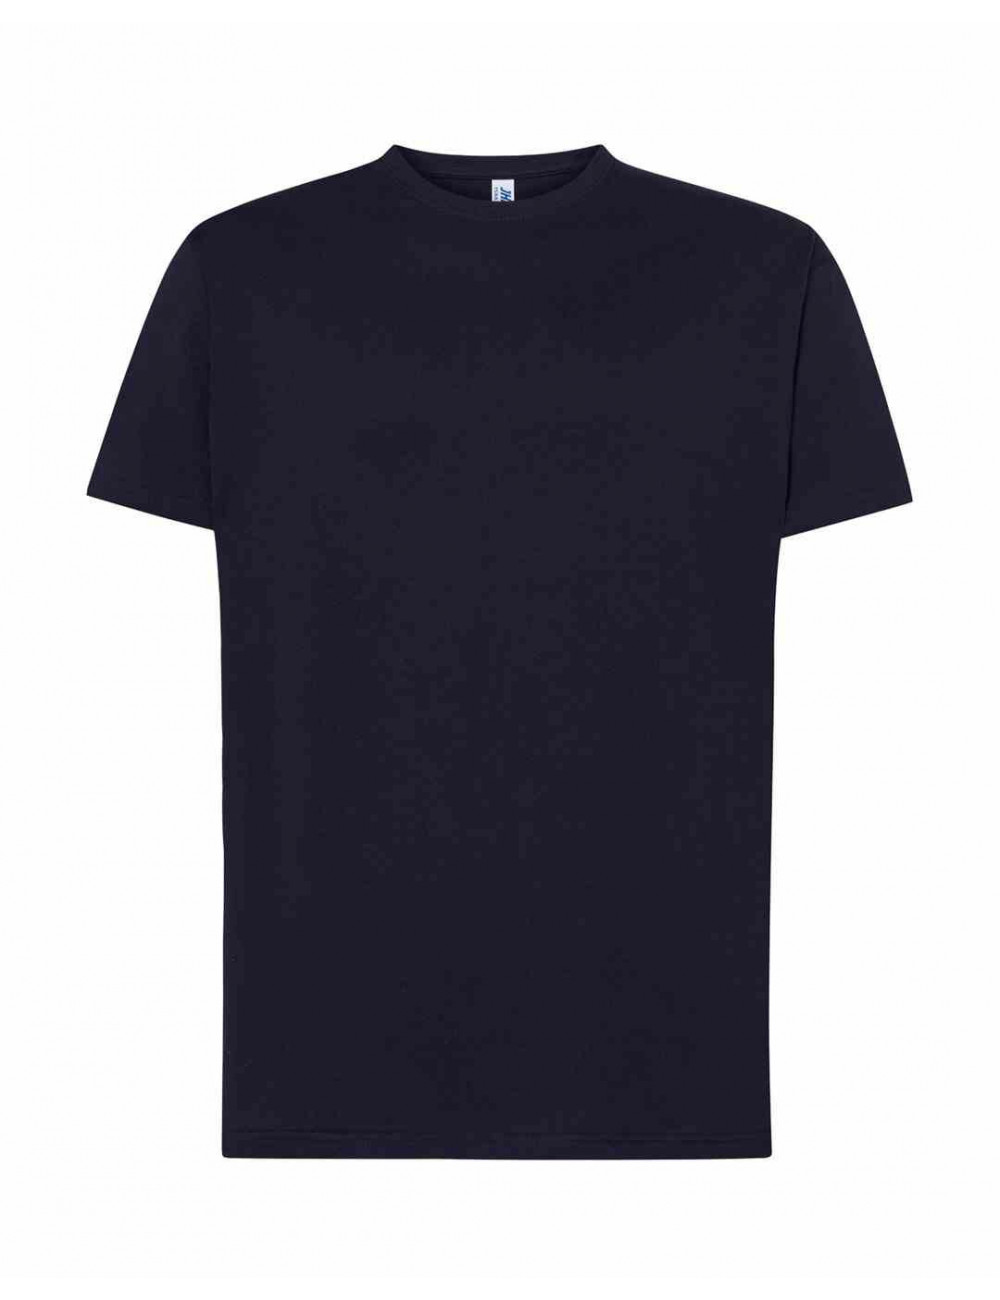 Men's t-shirt tsra 150 regular t-shirt ny - navy Jhk